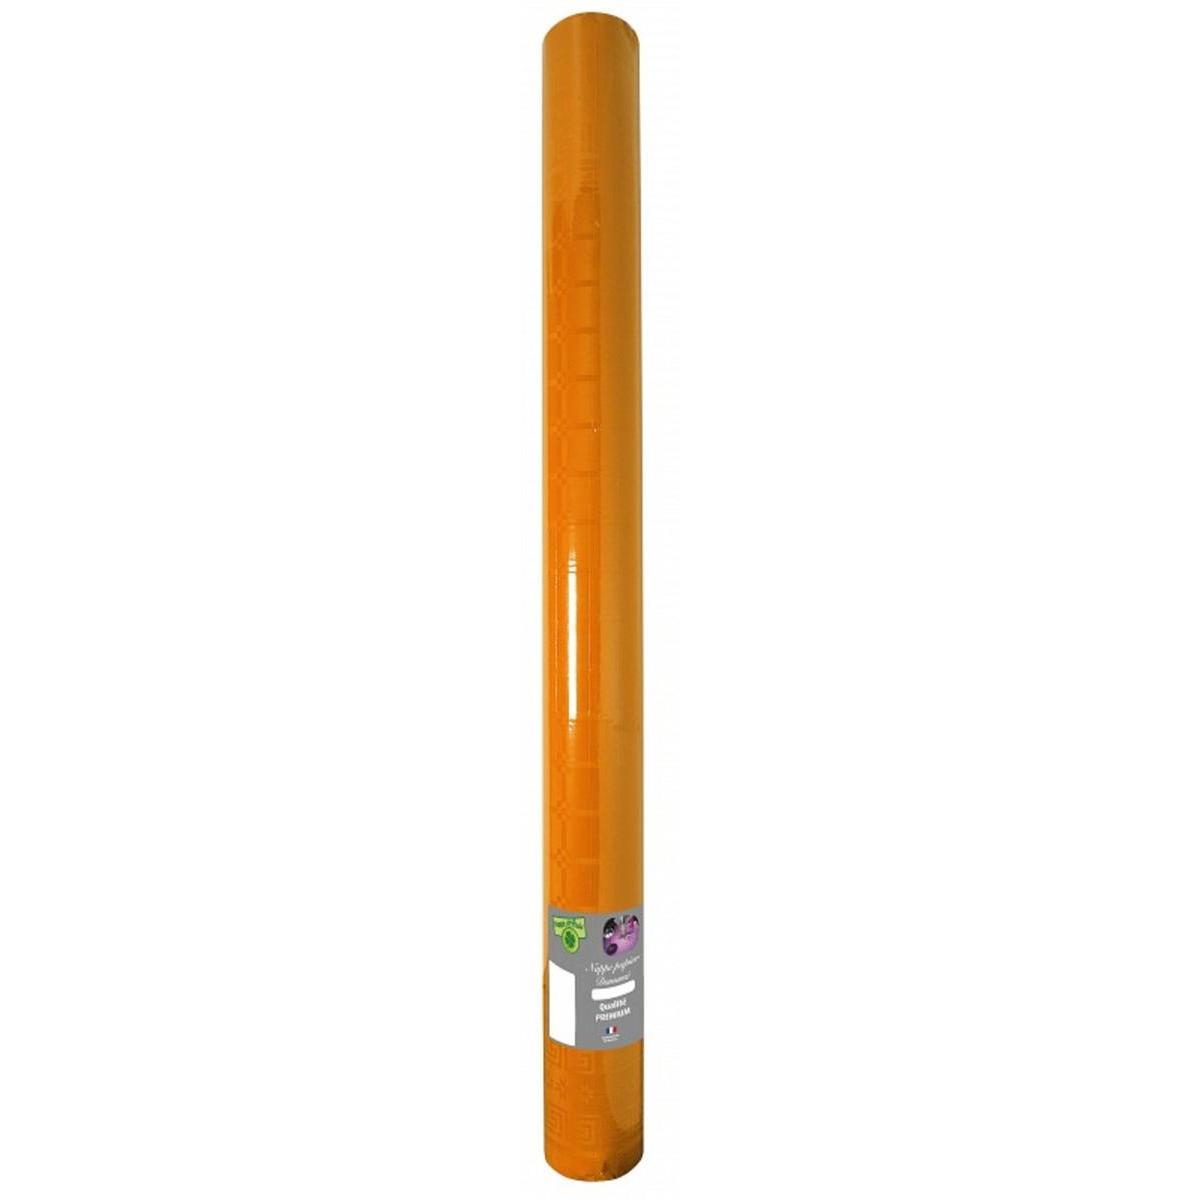 Nappe effet damassé - Papier - 6 m x 120 cm - Orange